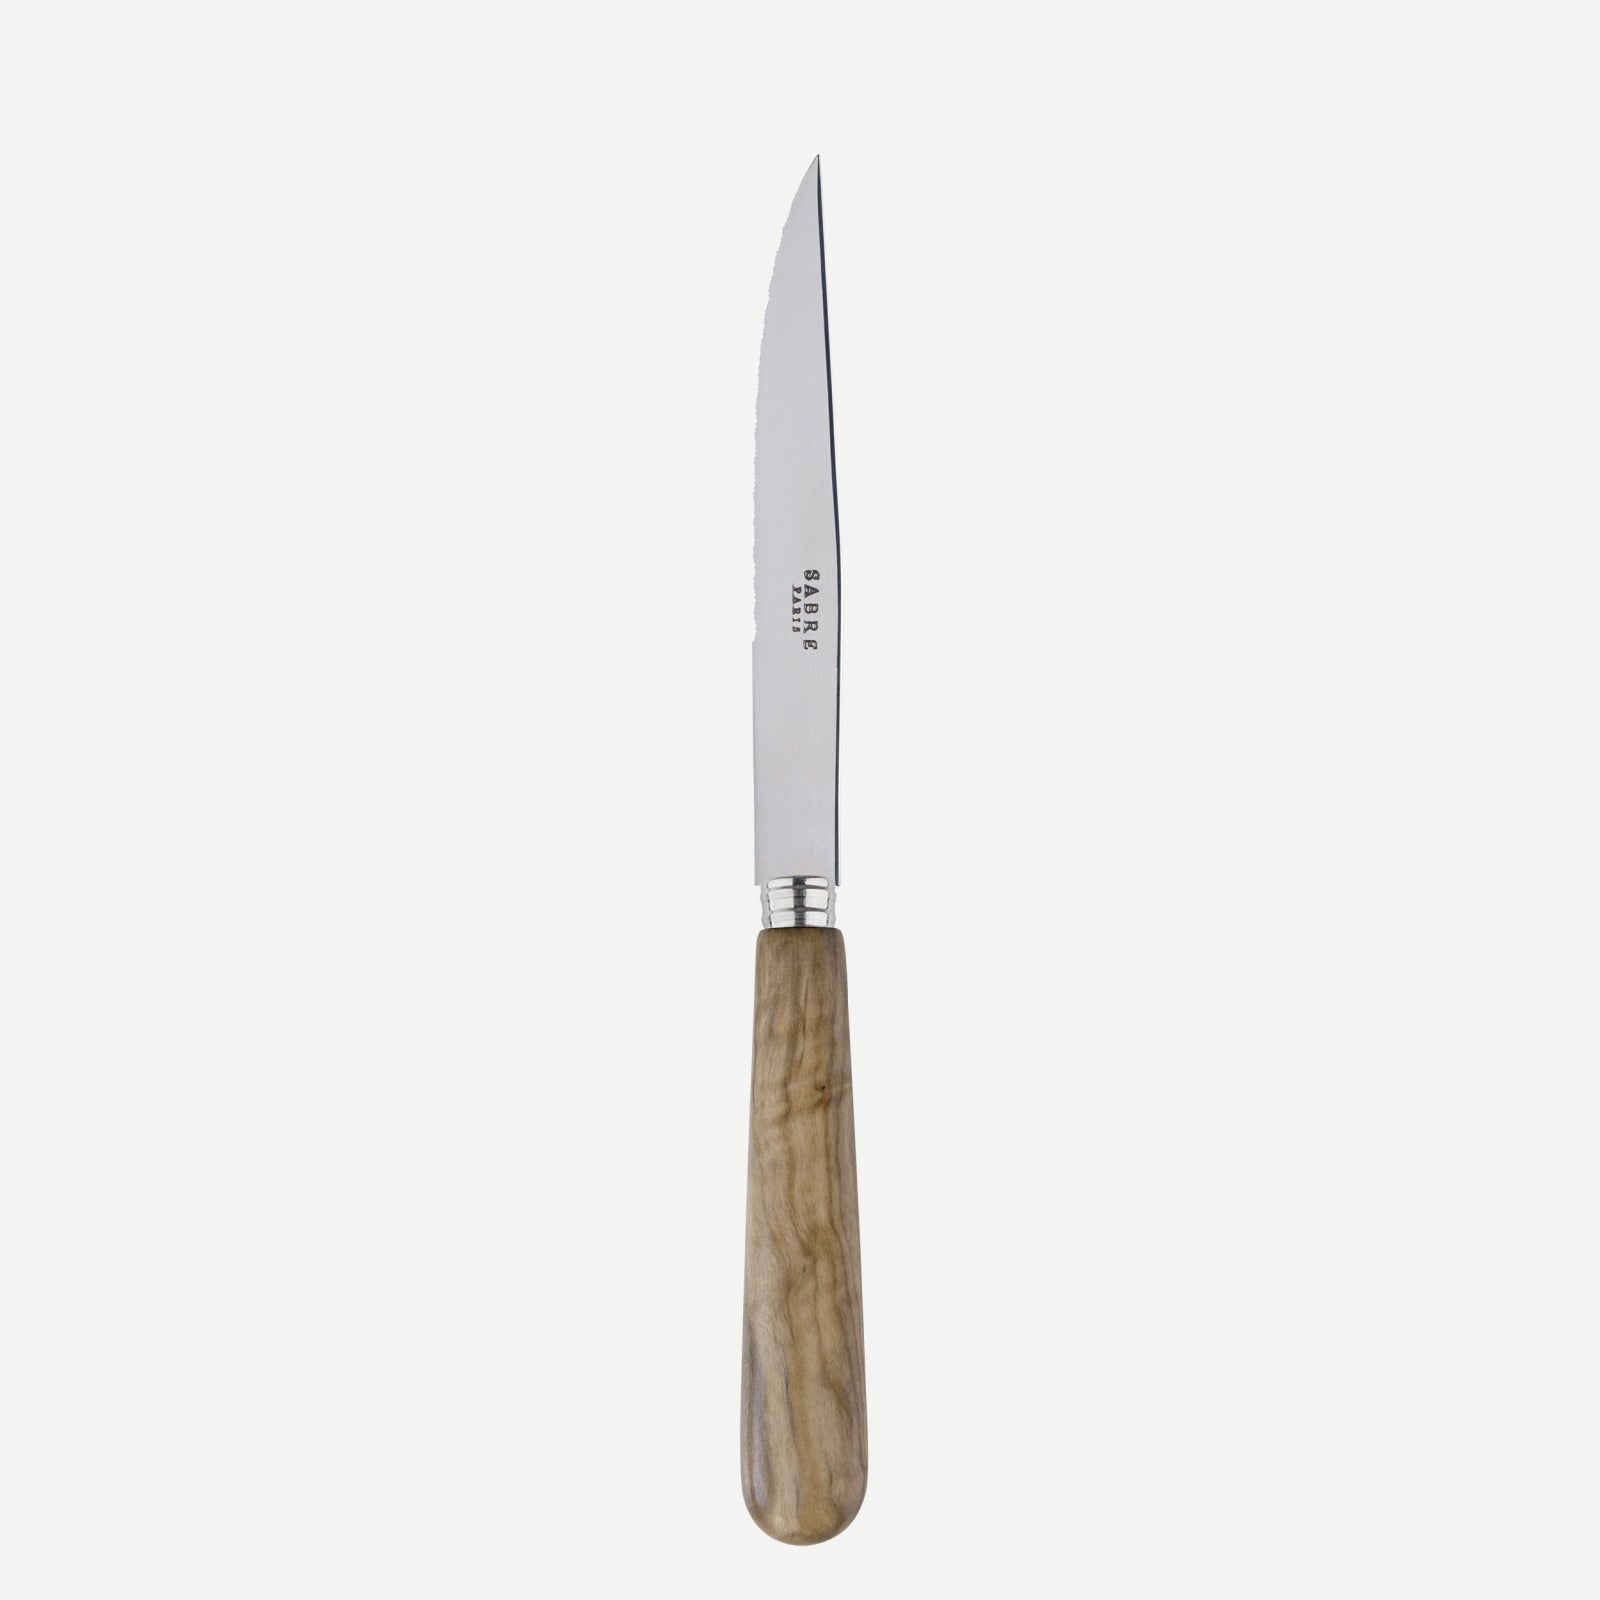 Steack knife - Lavandou - Olive tree wood